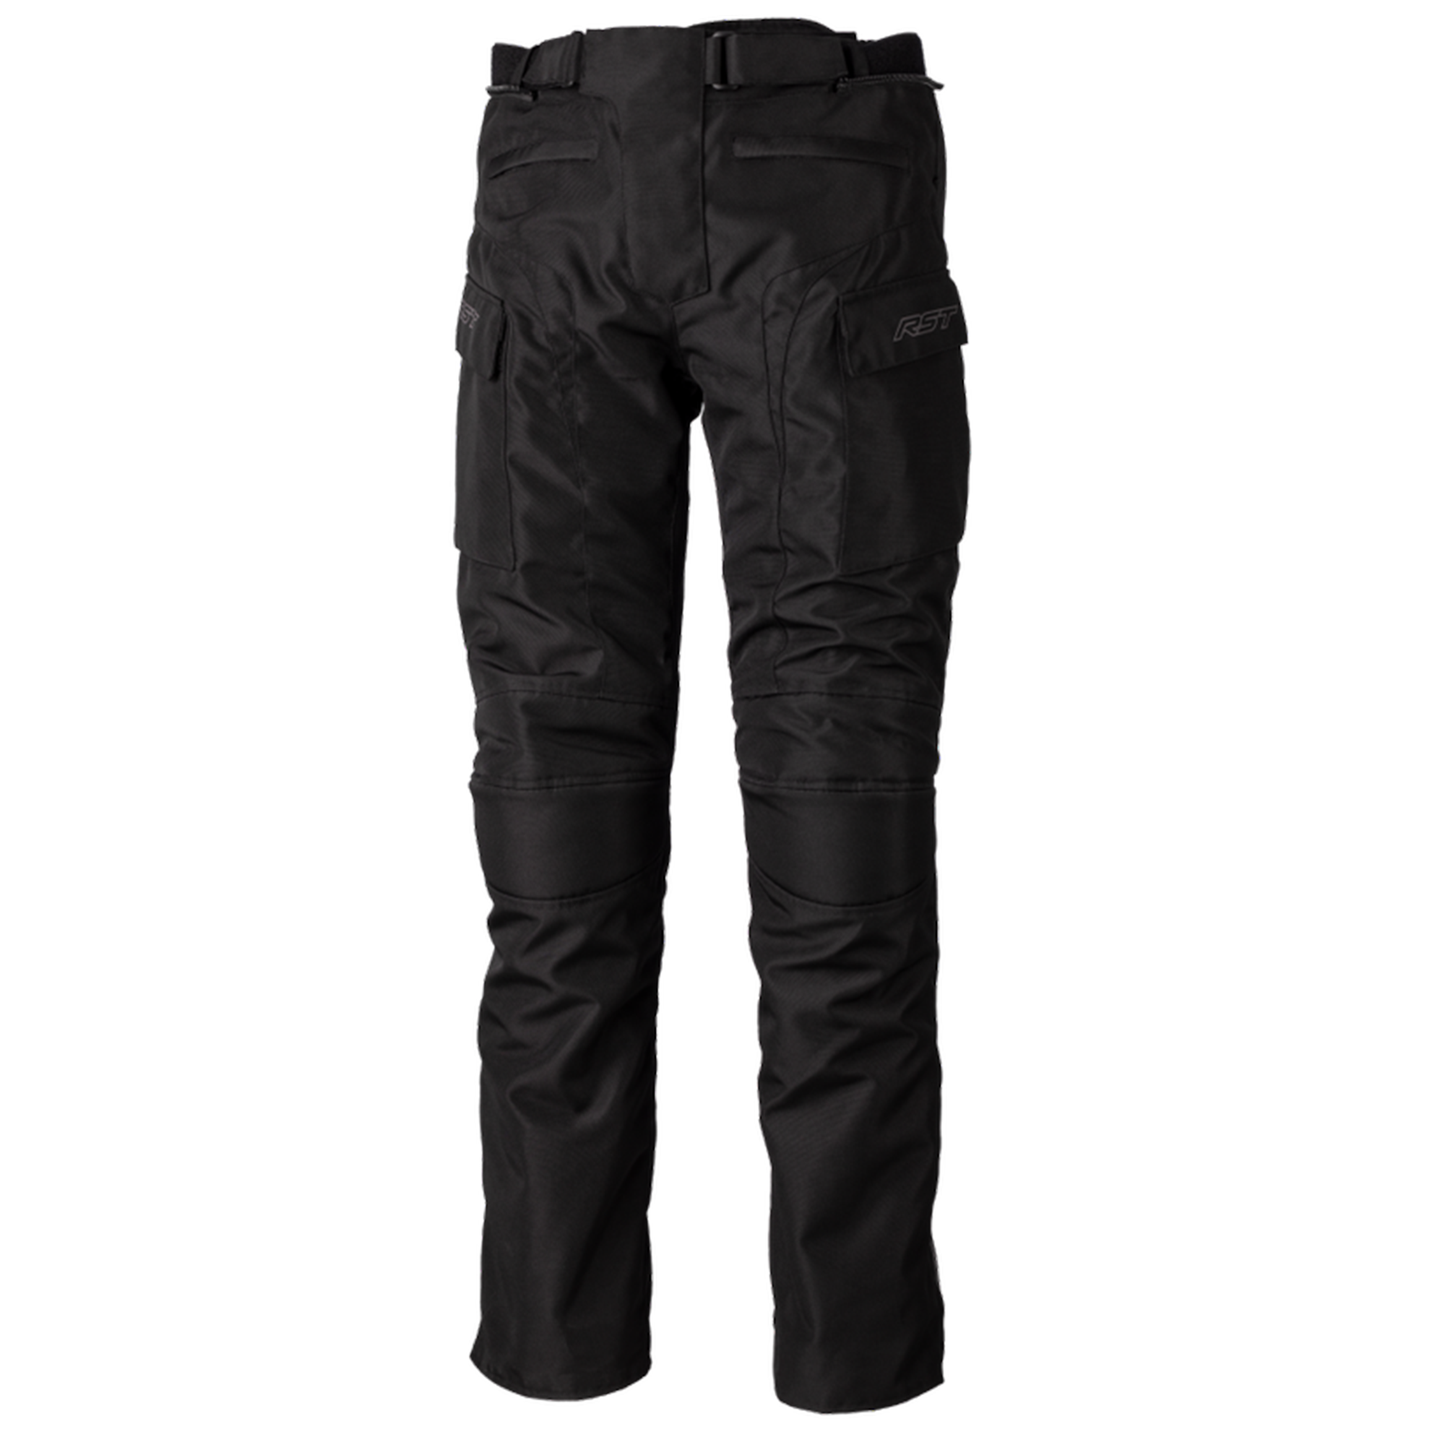 RST Alpha 5 Men's Textile Riding Jean - Short Leg - Black (3120)